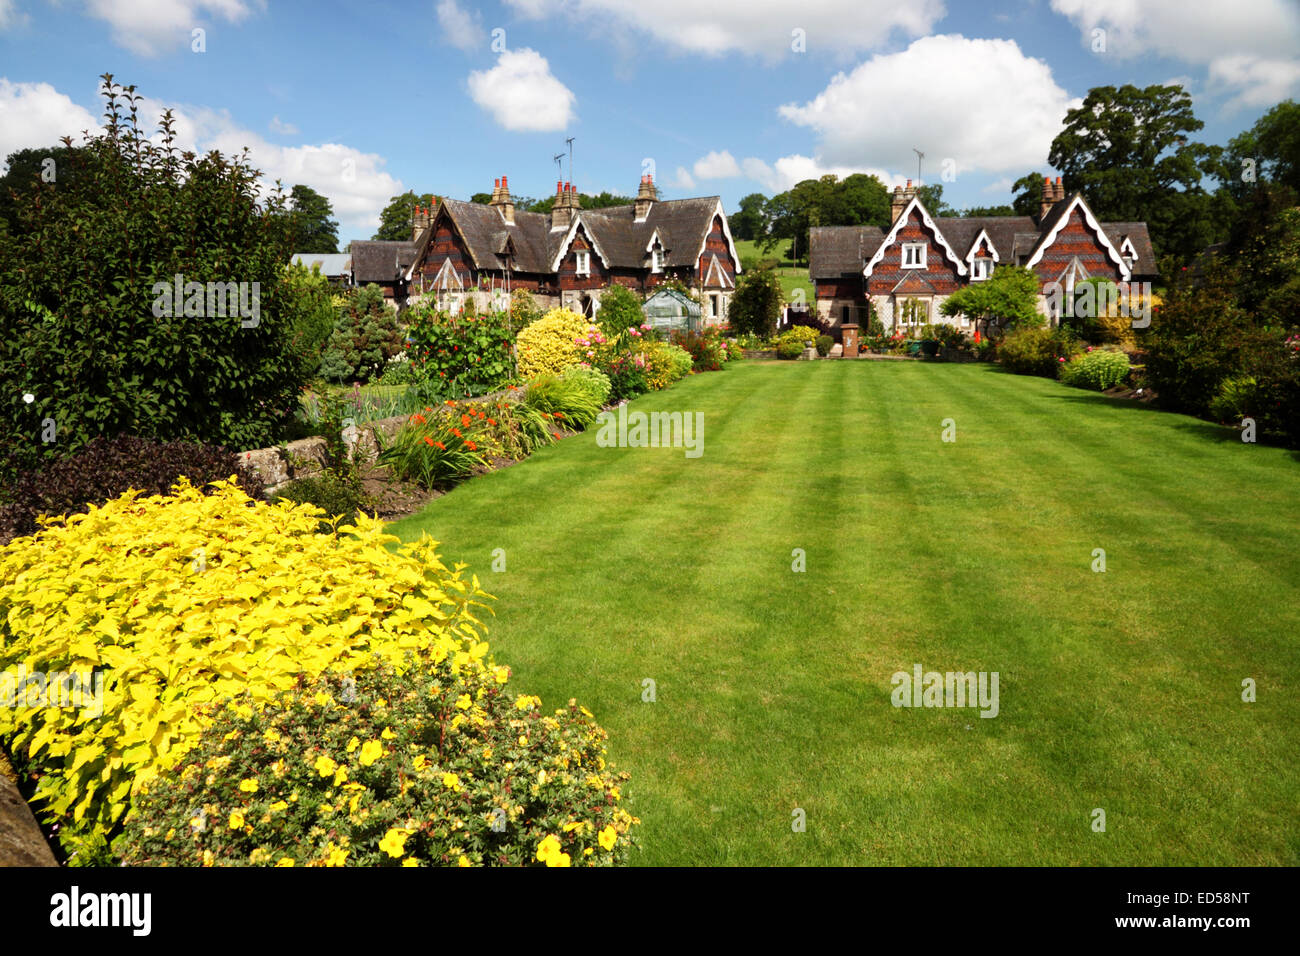 Un cottage Inglese giardino con un ampio prato, fiori di colore giallo e Swiss Cottage in stile sotto un cielo blu con nuvole. Foto Stock